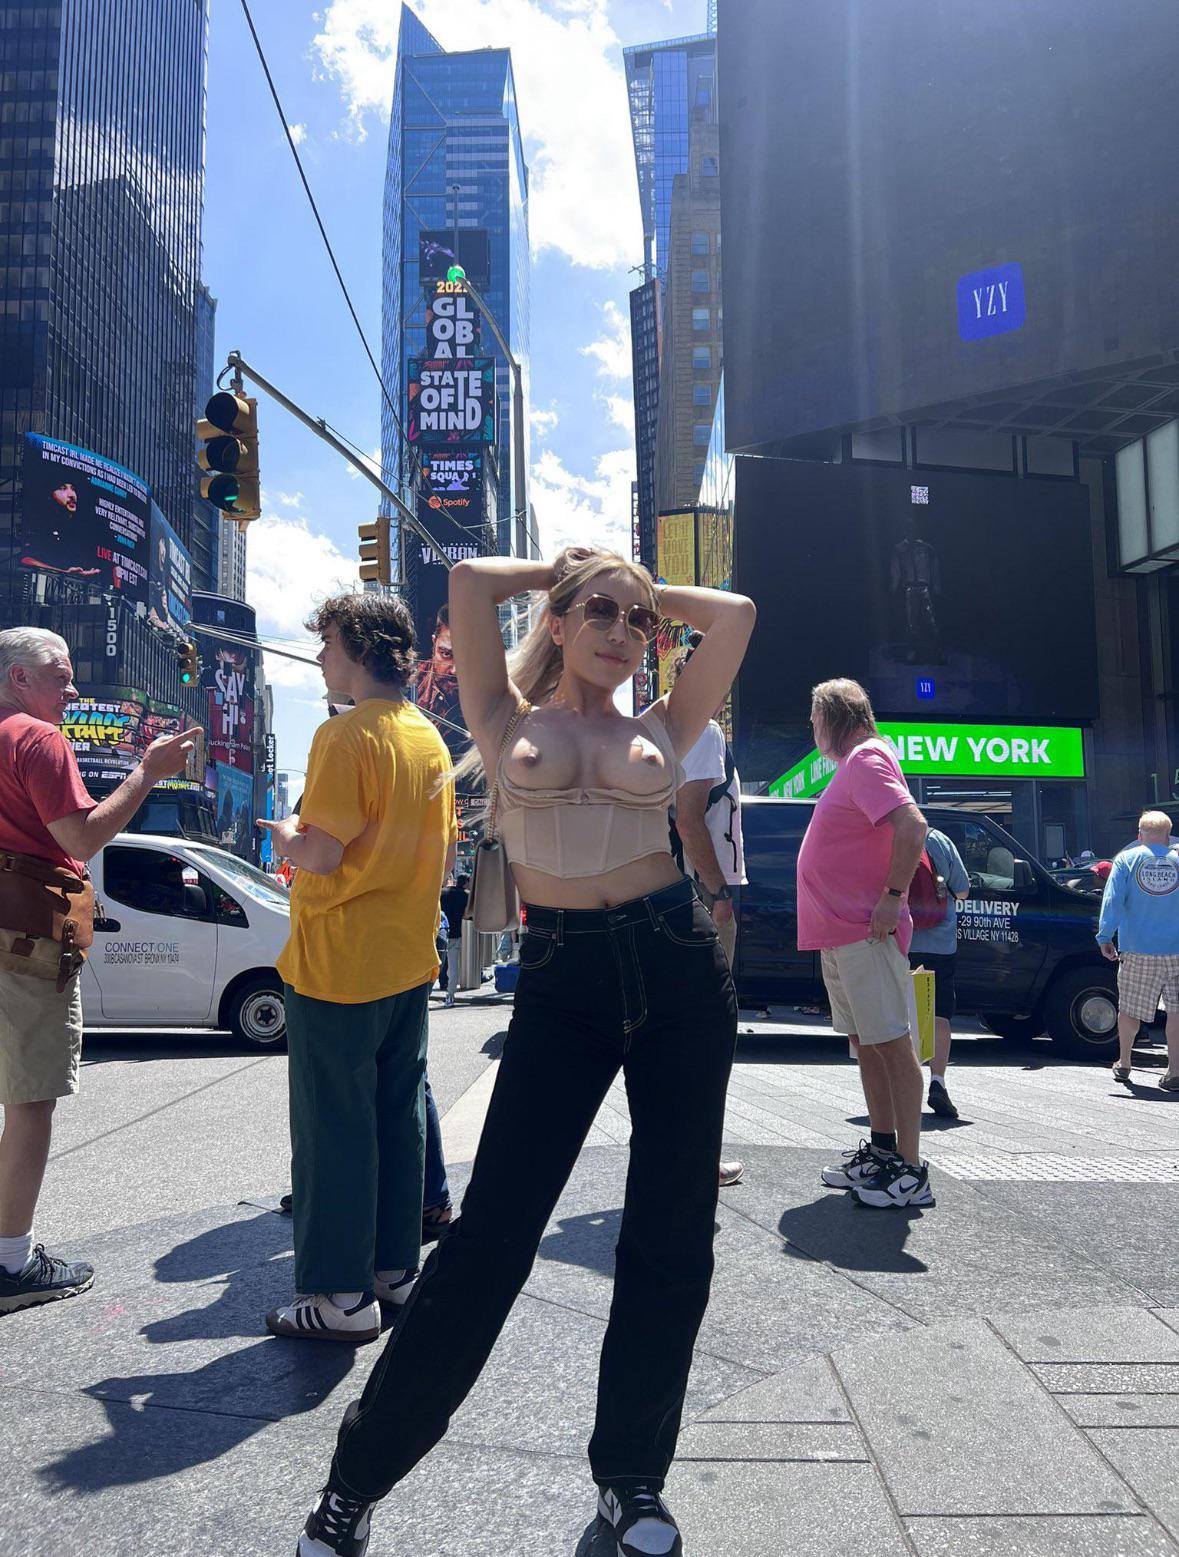 Nicole Doshi segnet den Times Square in New York Bild